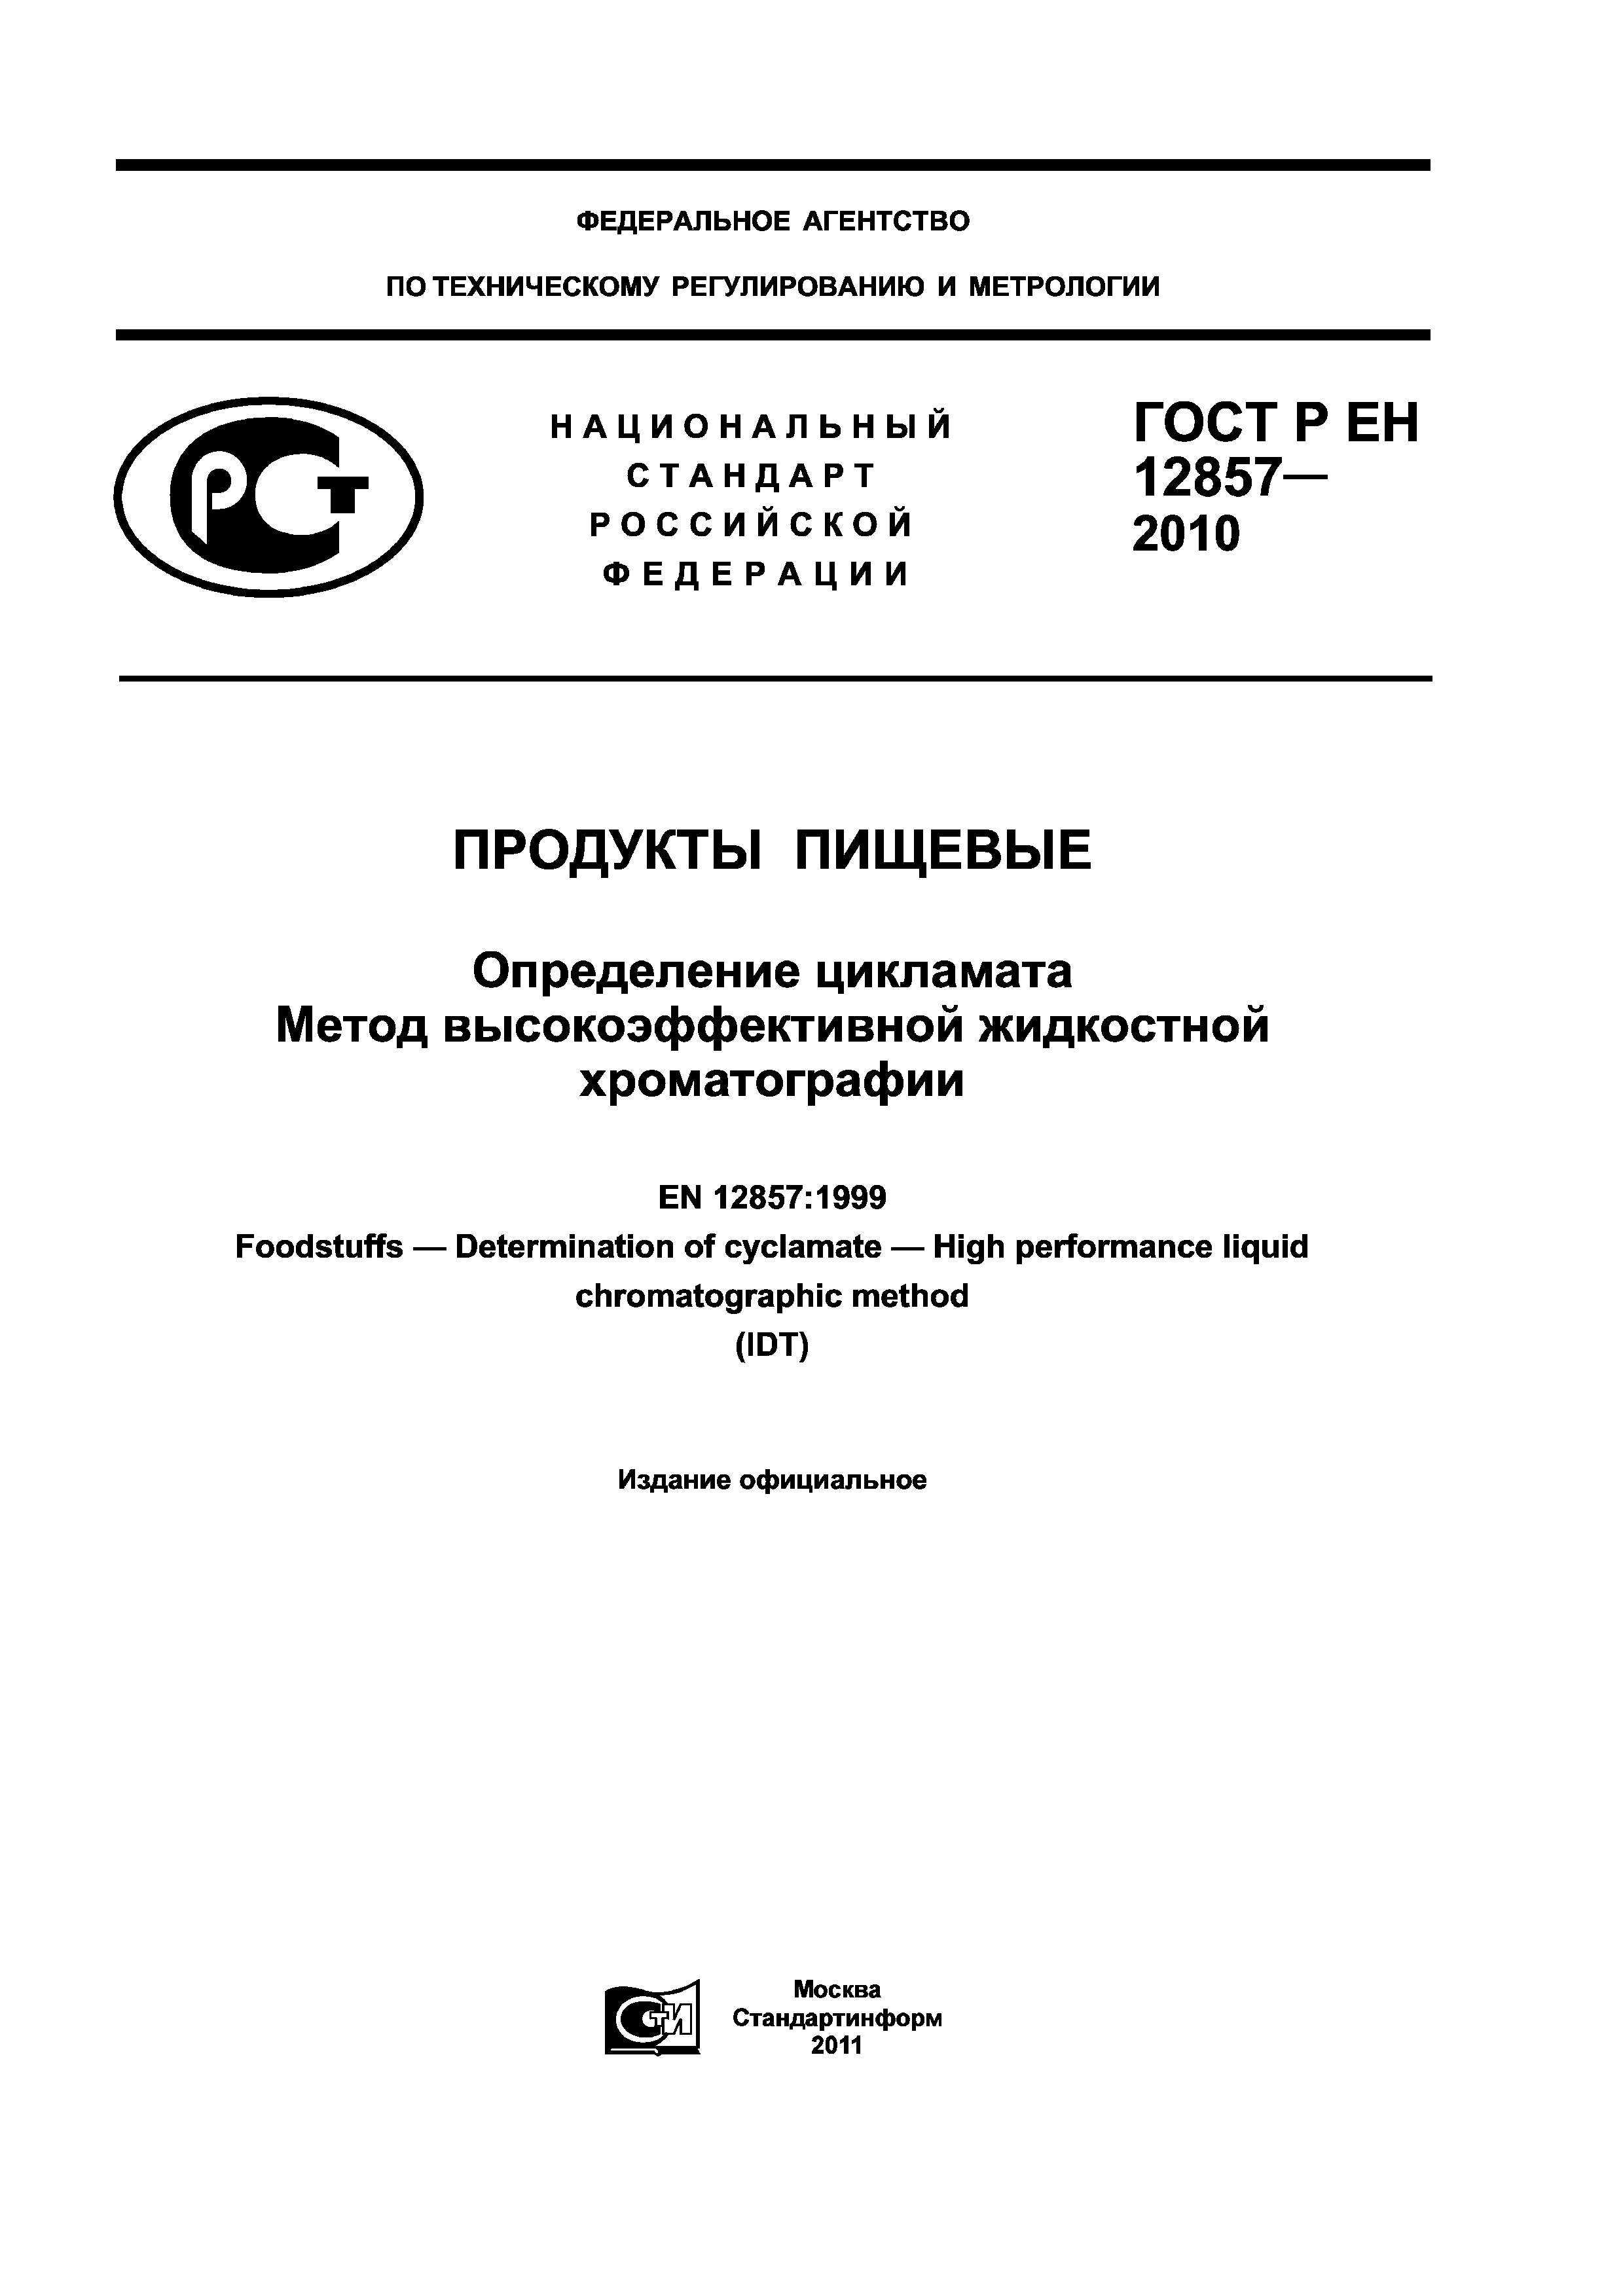 ГОСТ Р ЕН 12857-2010